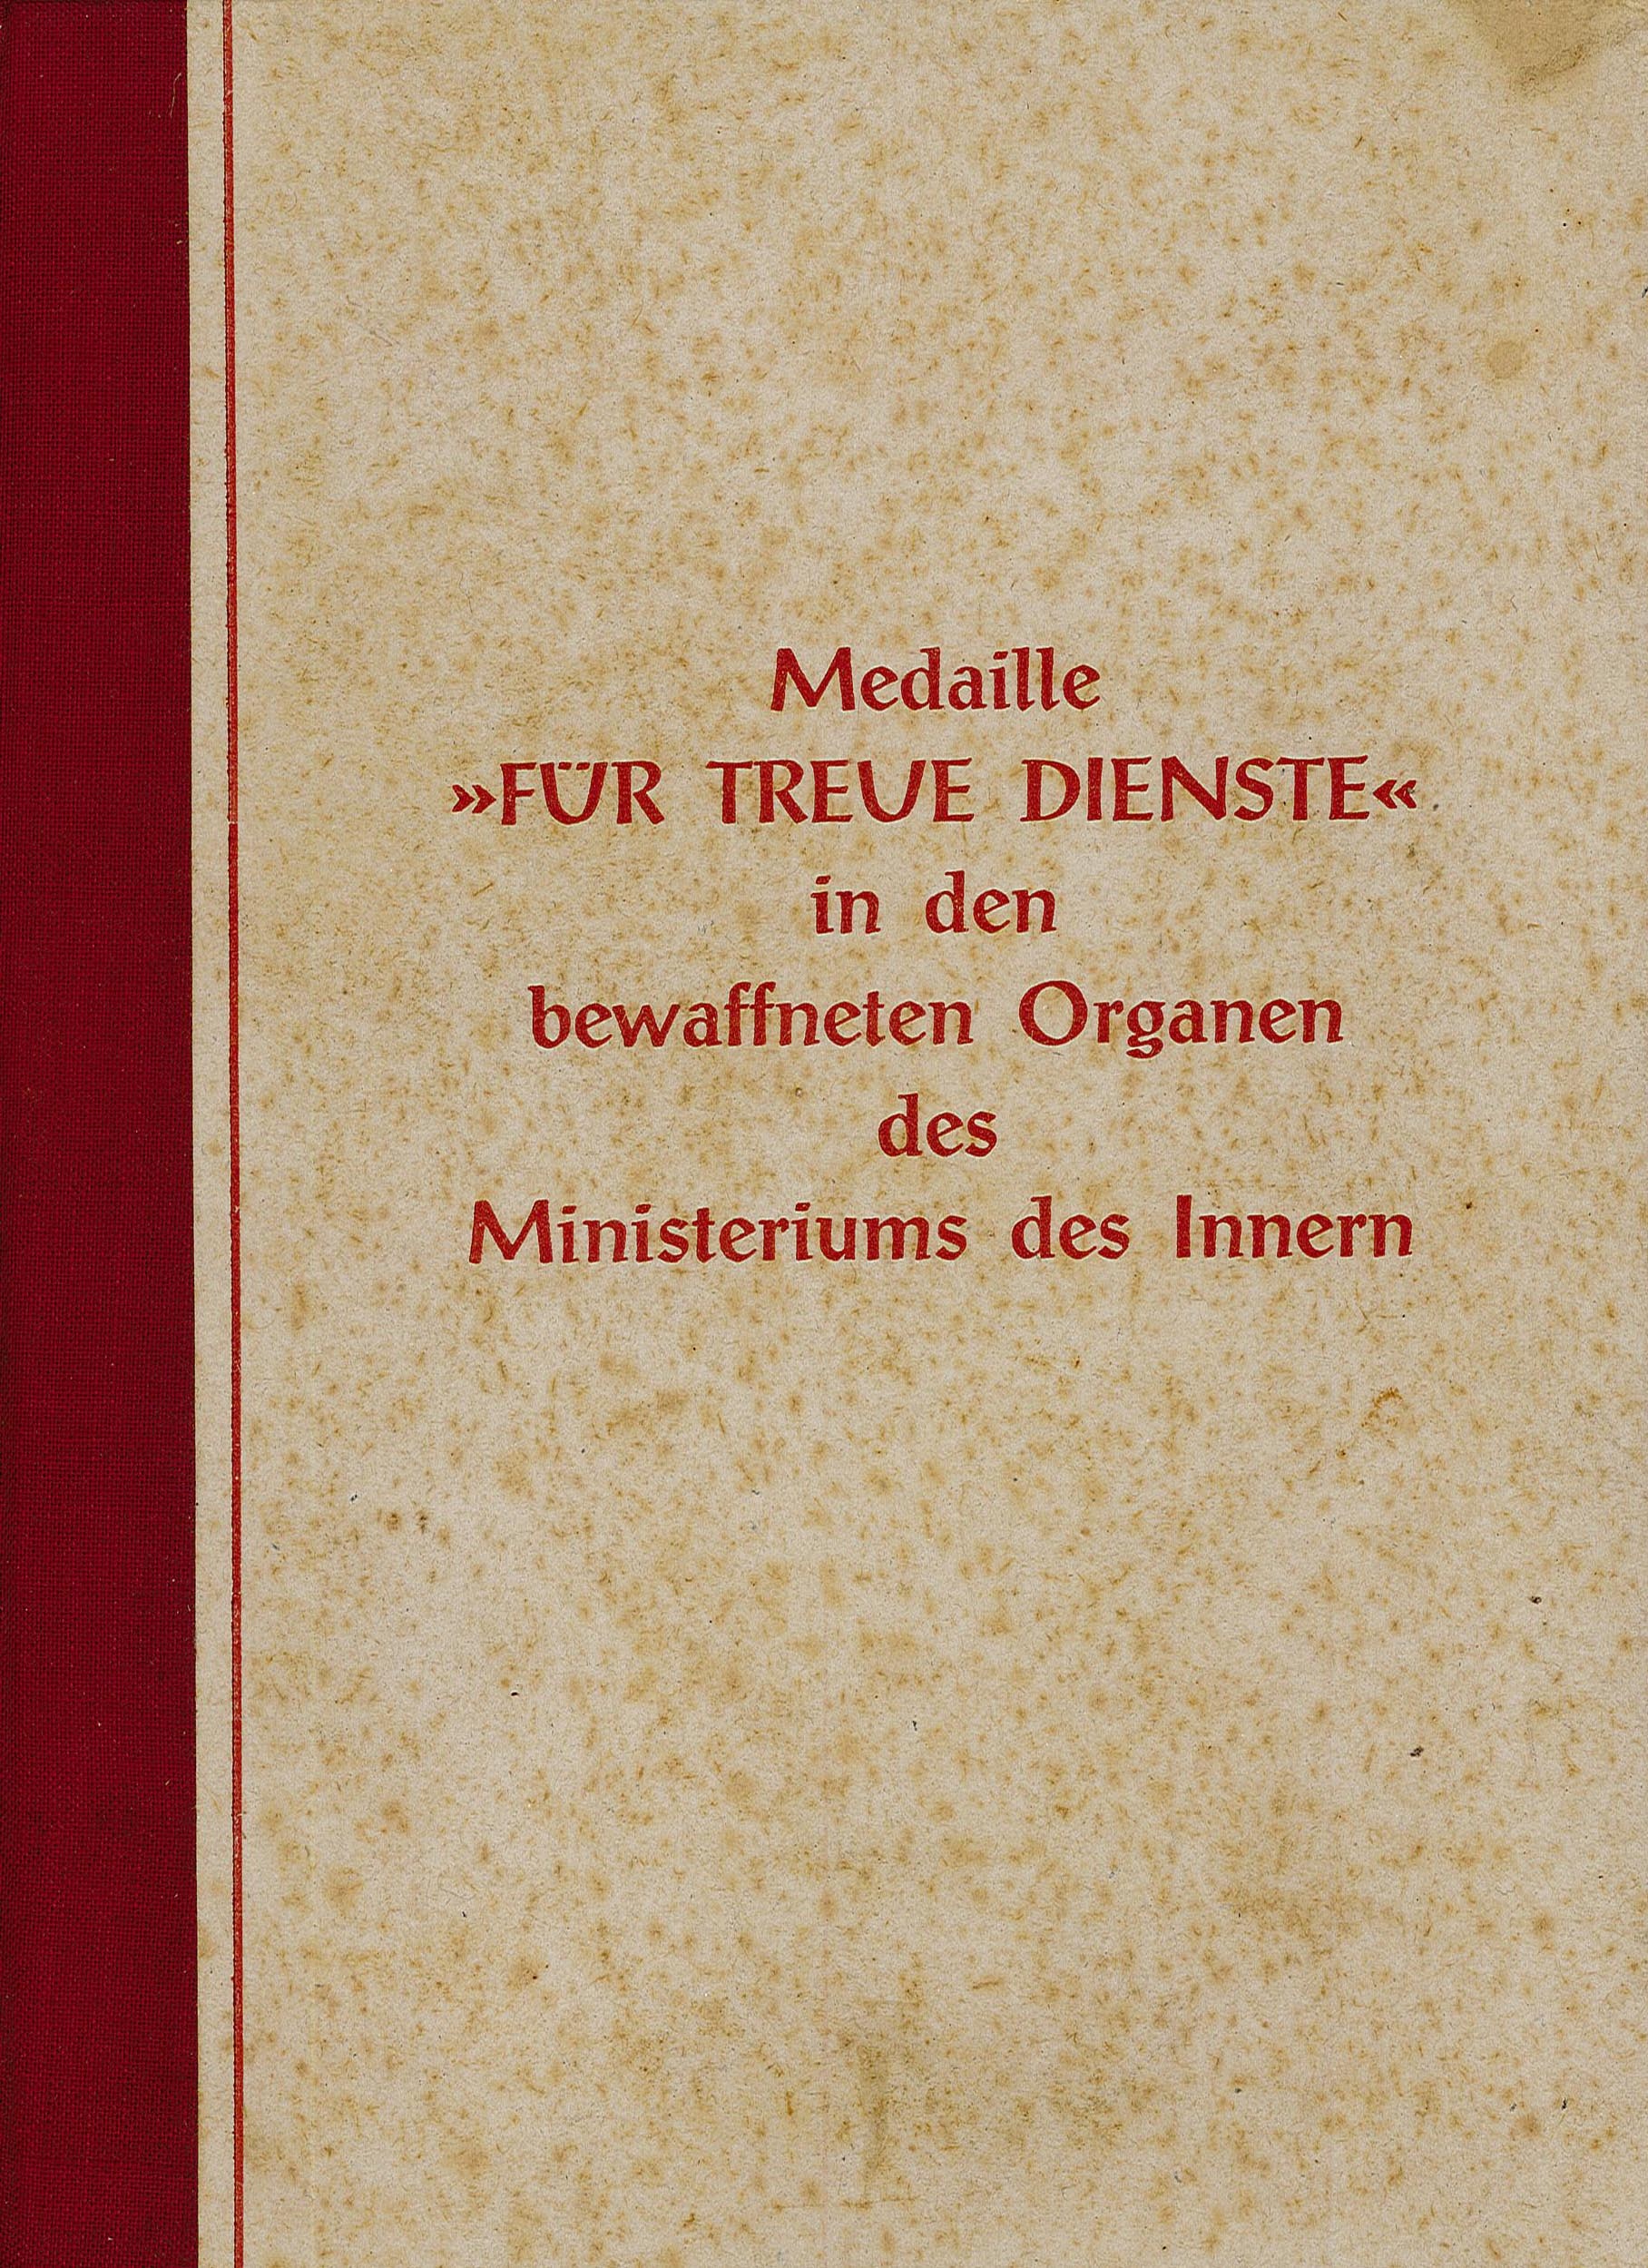 Ehrenurkunde für Treue Dienste in Bronze an Karl Thurm (Museum Wolmirstedt RR-F)